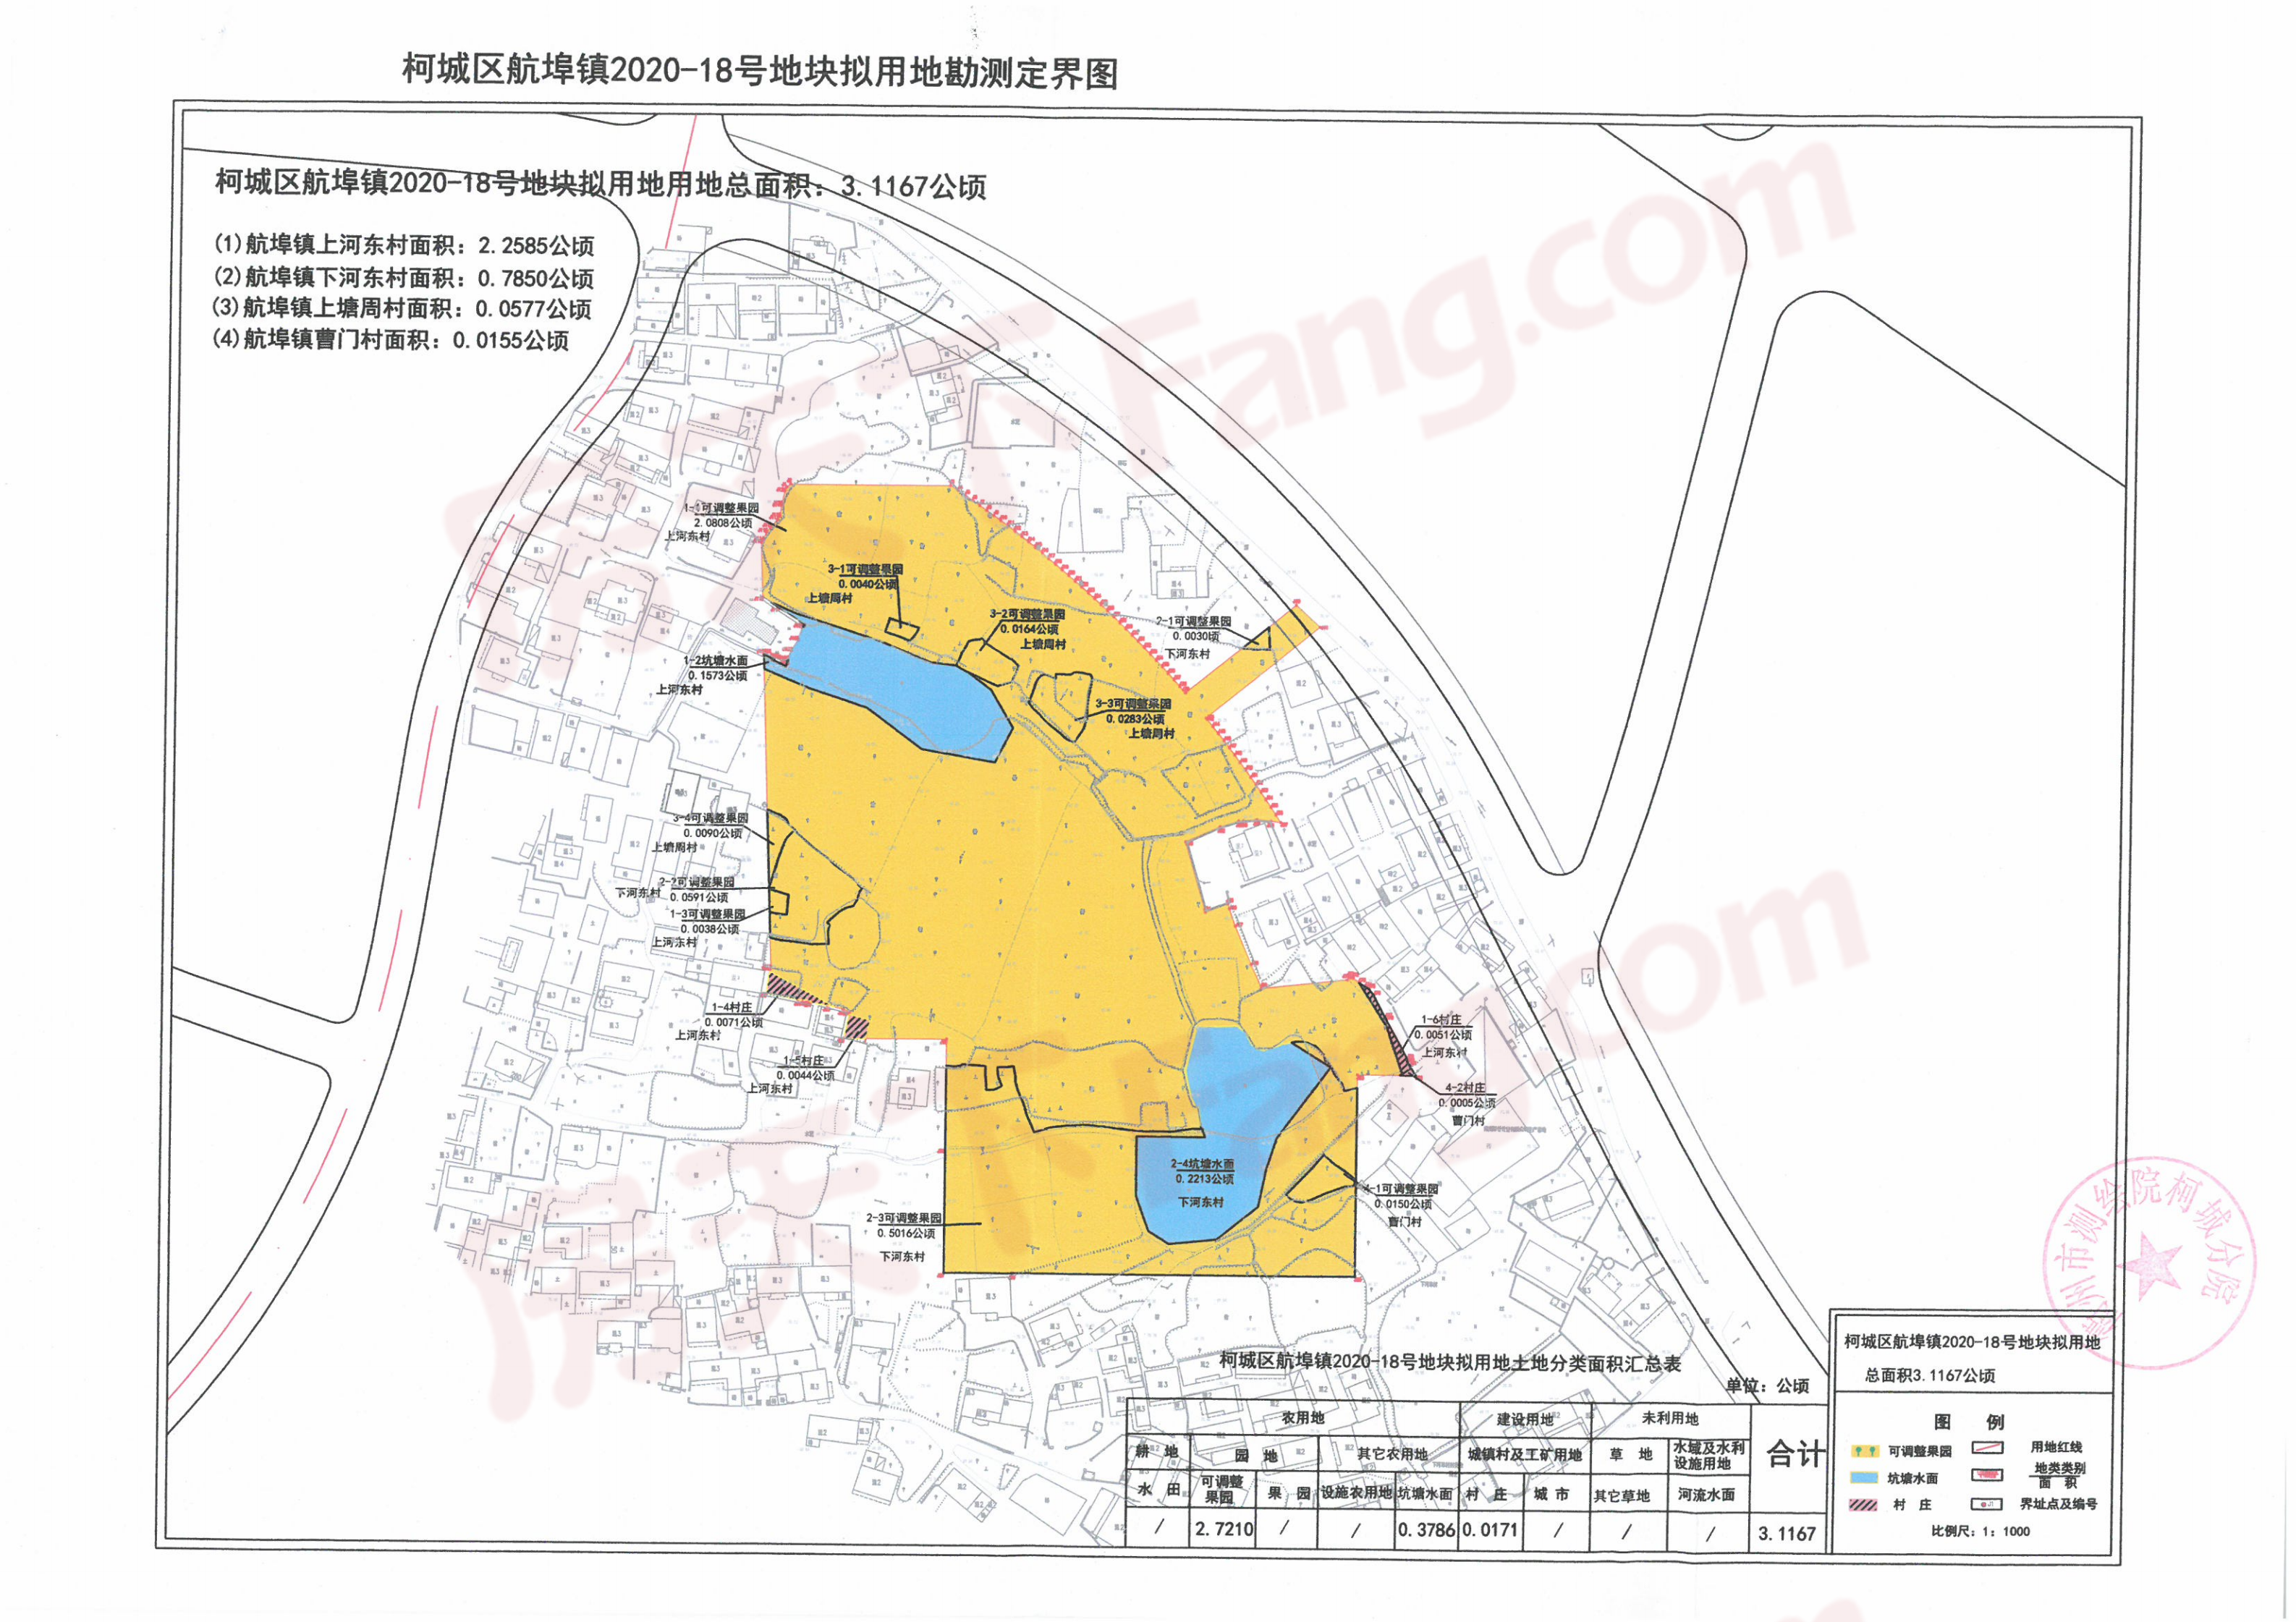 衢州市柯城区发布土地征收补偿公告，共建设20个项目